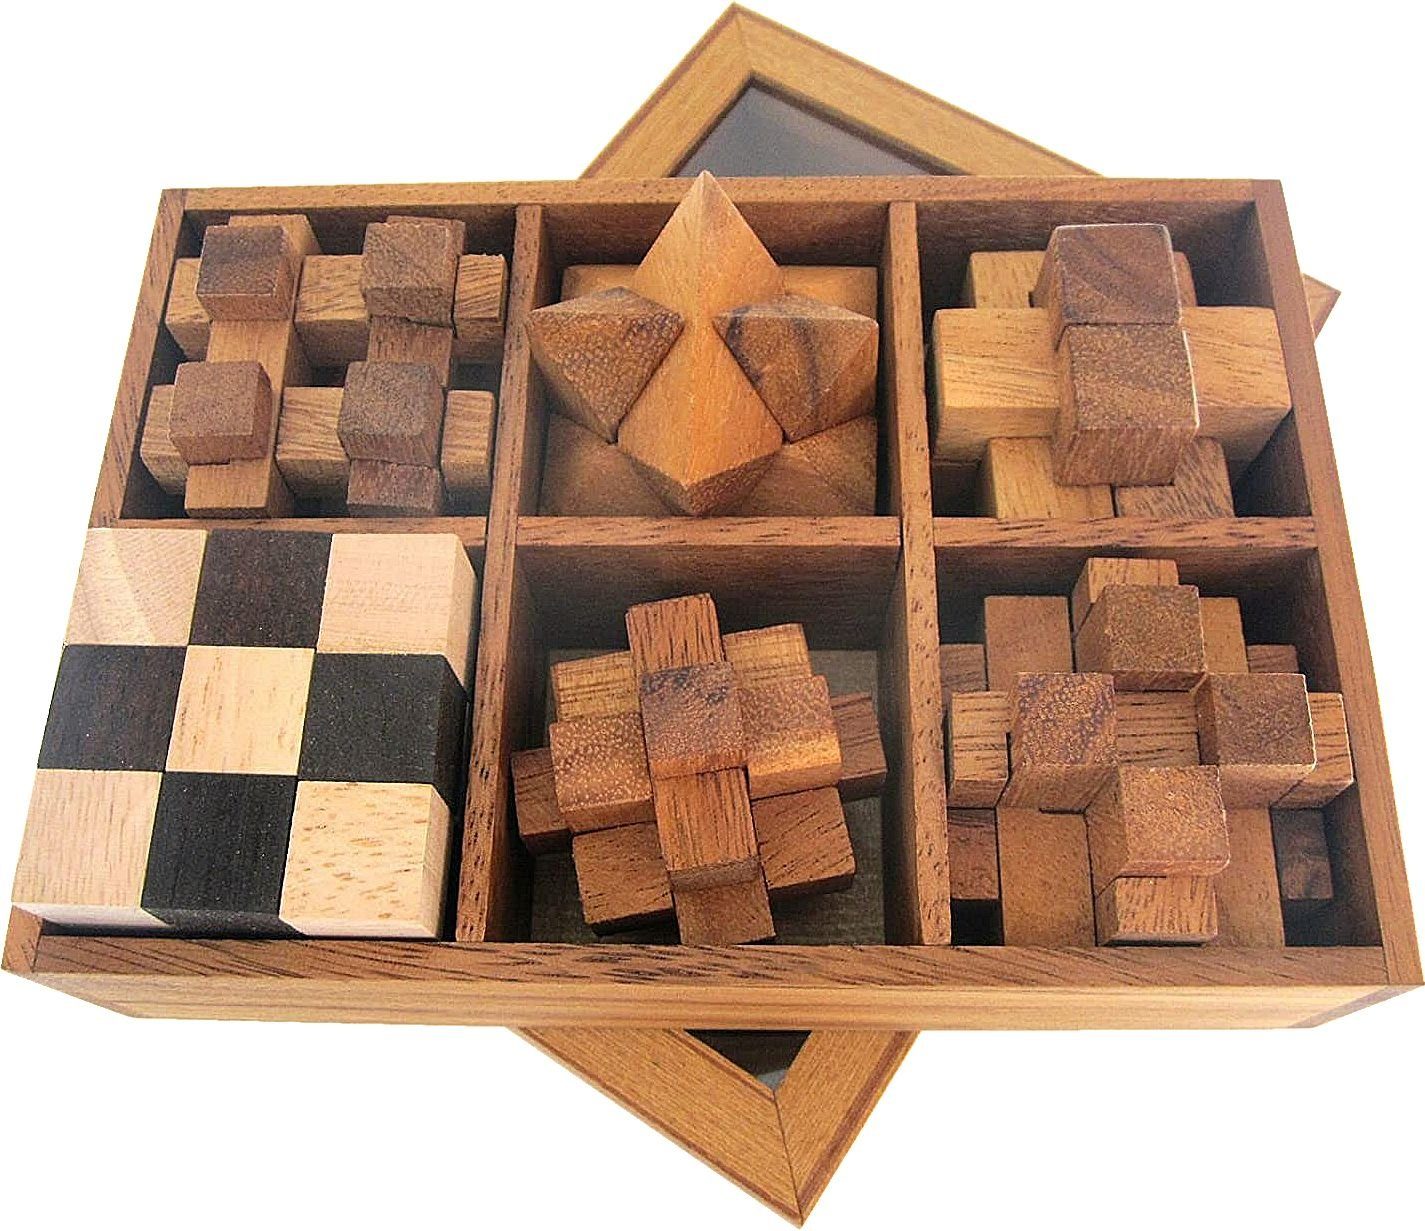 Logoplay Holzspiele Spiel, 6 Knobelspiele im Set in Geschenkbox aus Holz mit transparentem DeckelHolzspielzeug